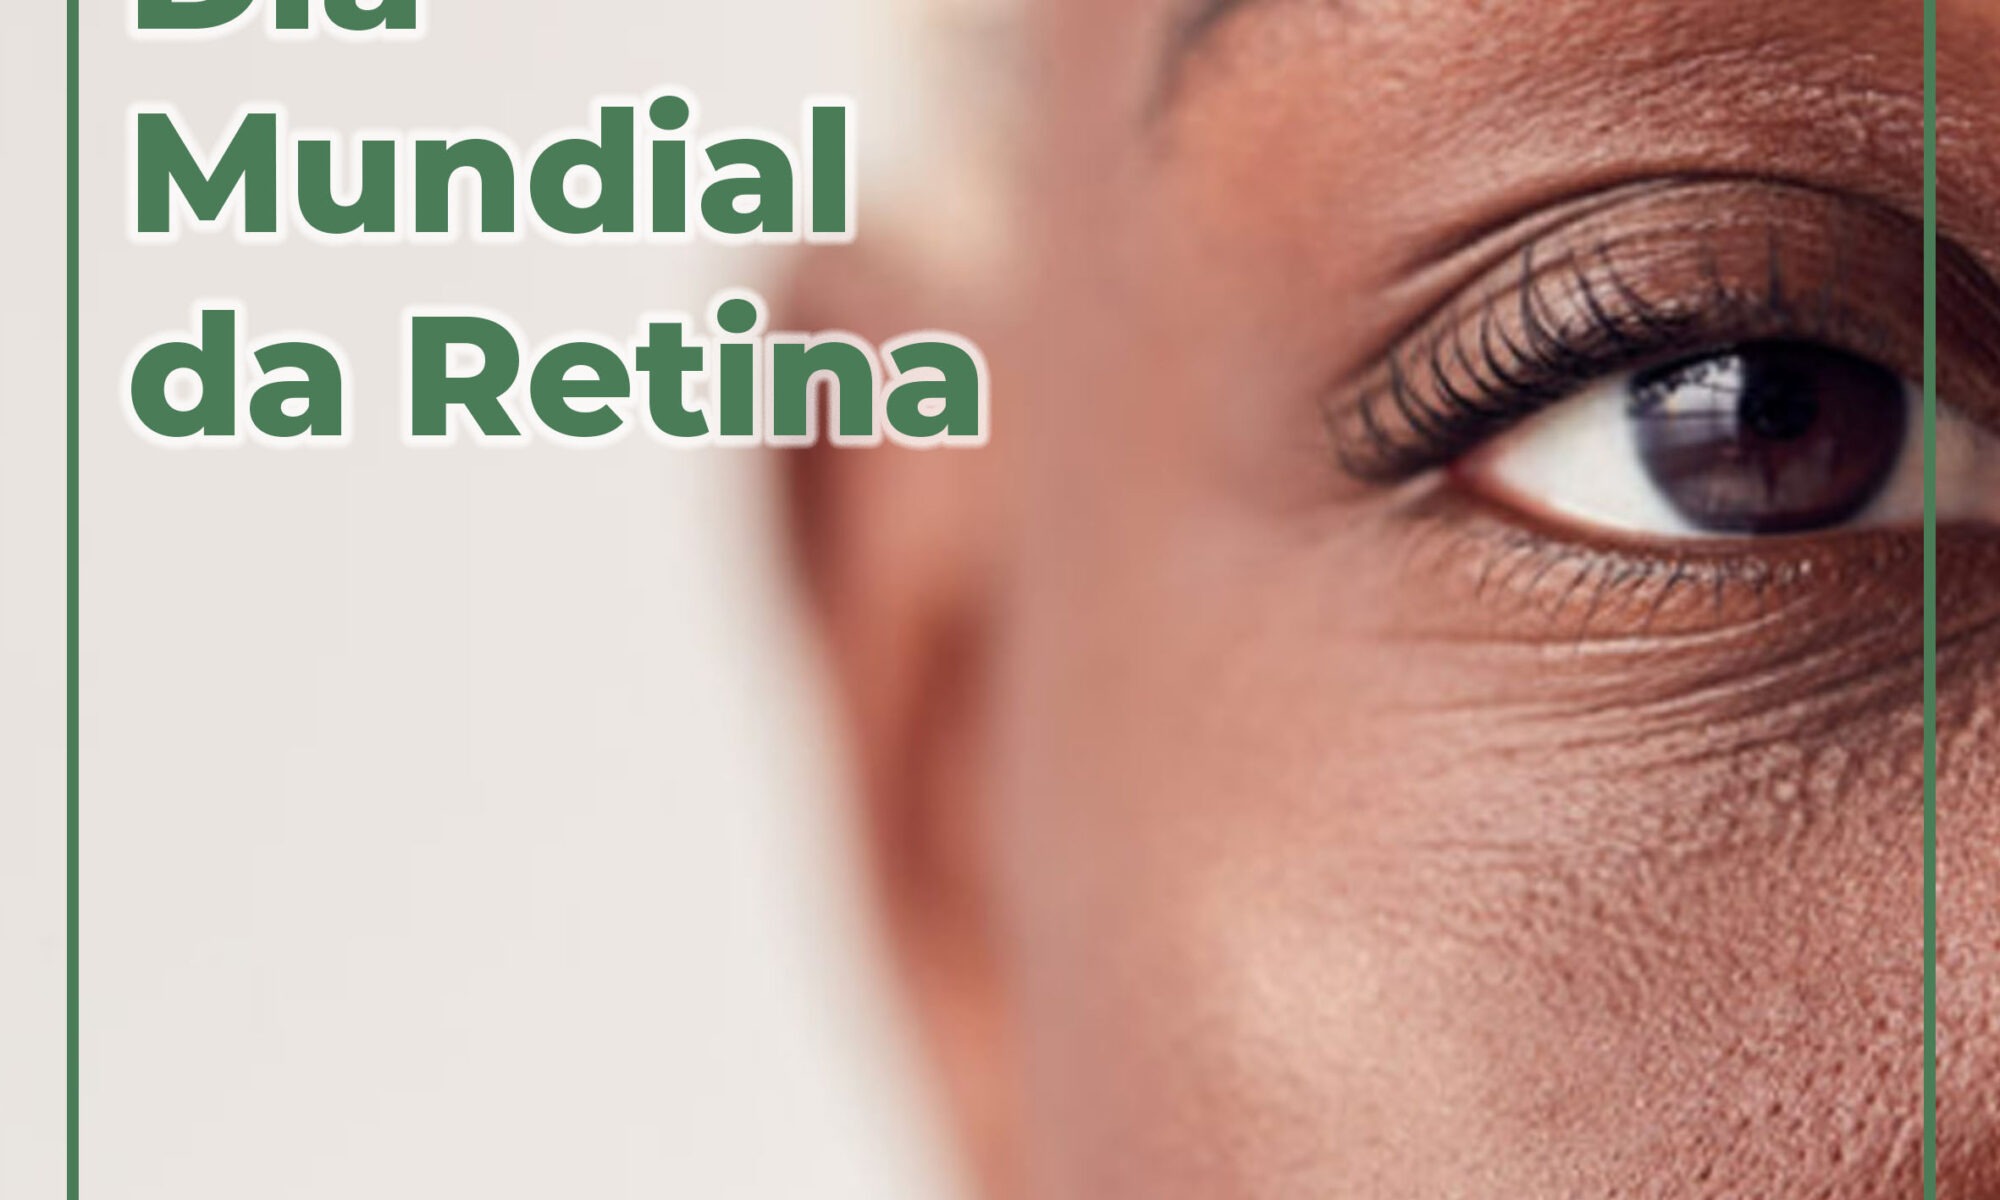 Considerações gerais sobre doenças da retina - Distúrbios